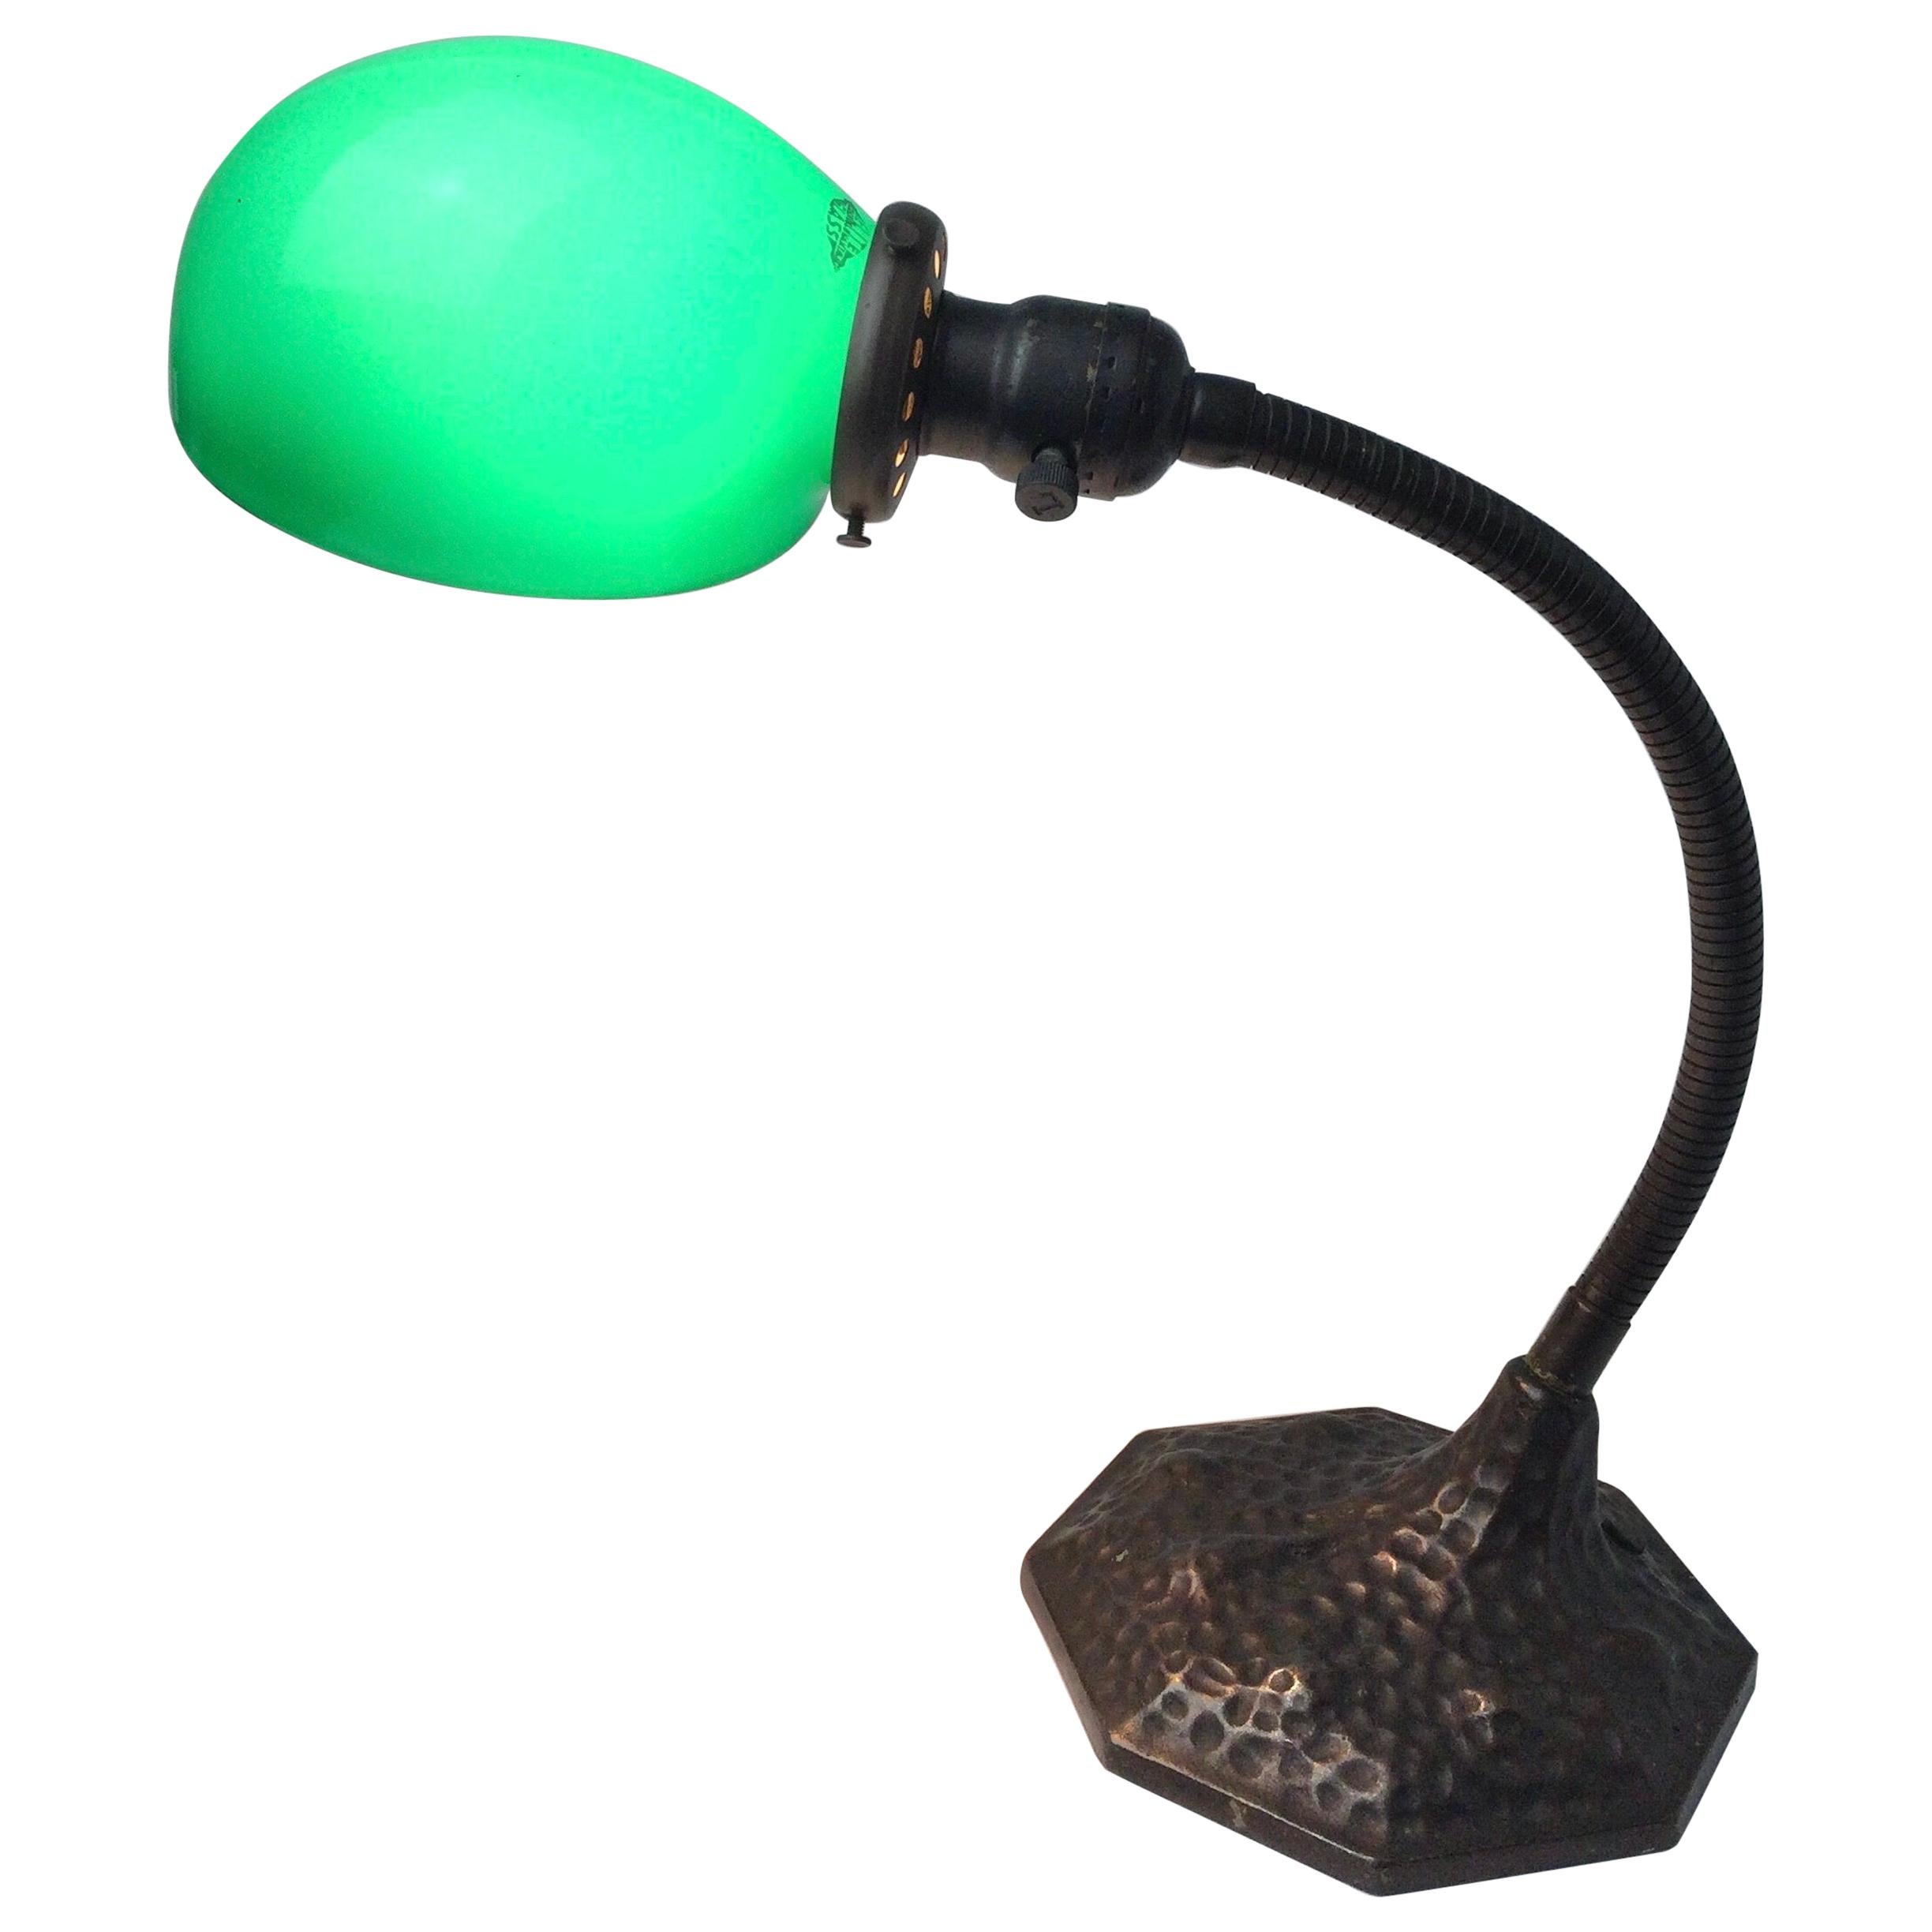 Verstellbare Arts and Crafts Prince-Schreibtischlampe mit grünem Glasschirm und Etuiglasschirm